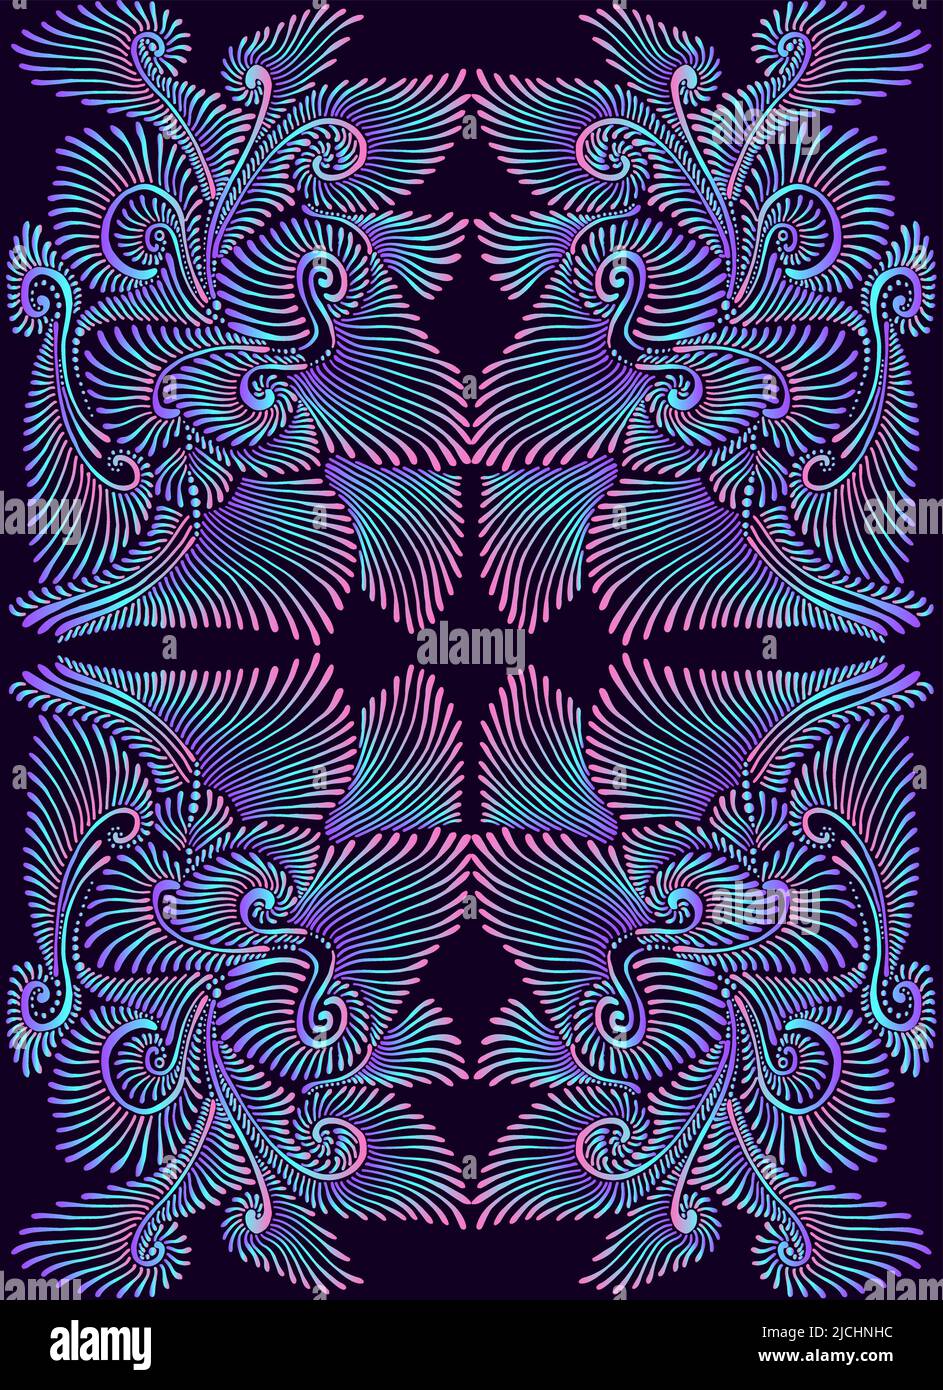 Eleagant vintage psychédélique trippy coloré mandala motif. Dégradé fluo violet, rose, bleu, isoladen sur fond noir. Illustration de Vecteur